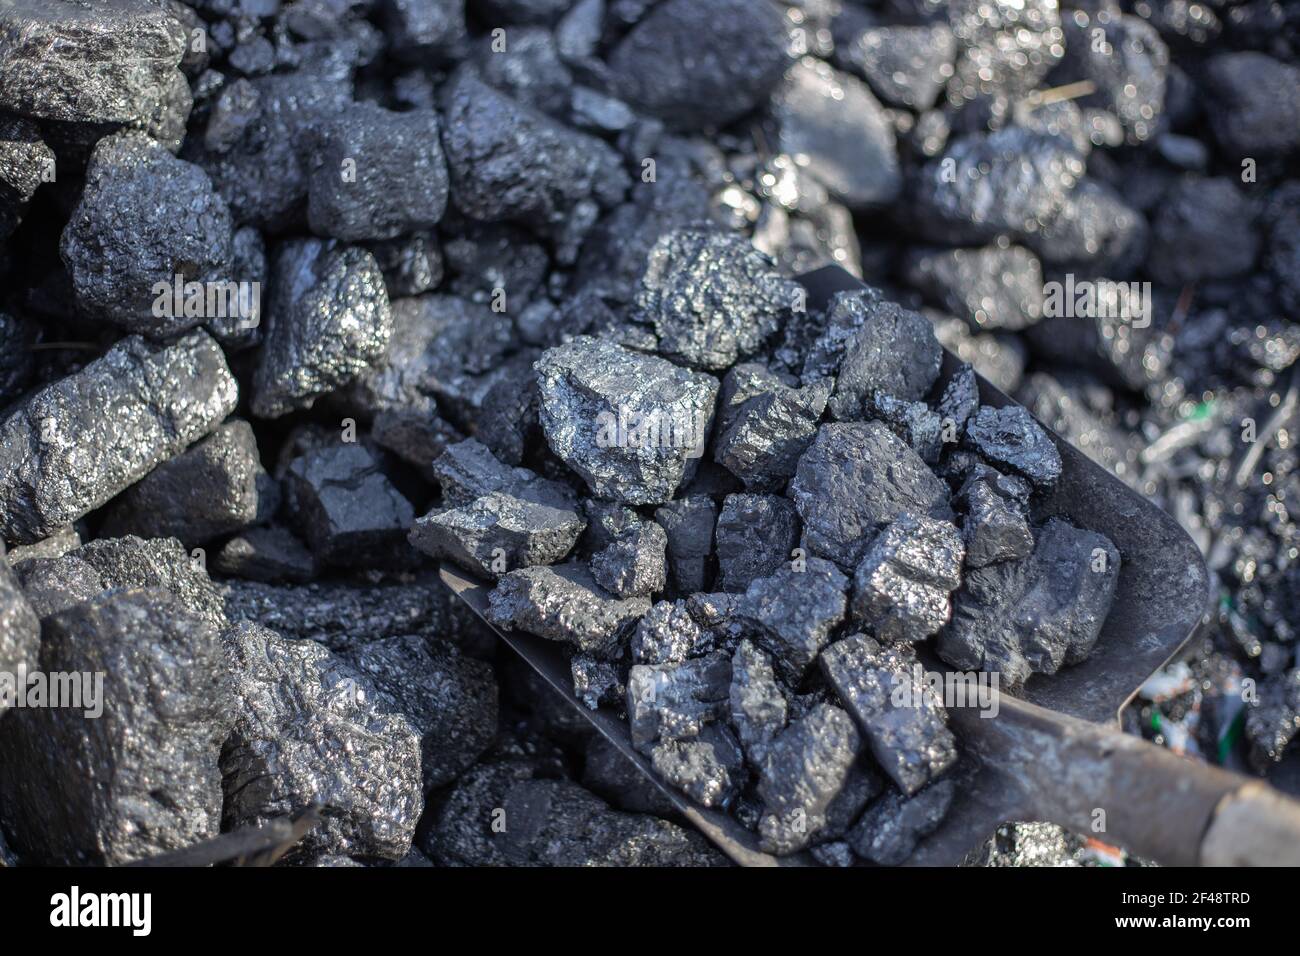 Attività minerarie. Grandi pezzi di carbone sono sboched con una pala, combustibile minerale per stufe e caldaie domestiche. Foto Stock